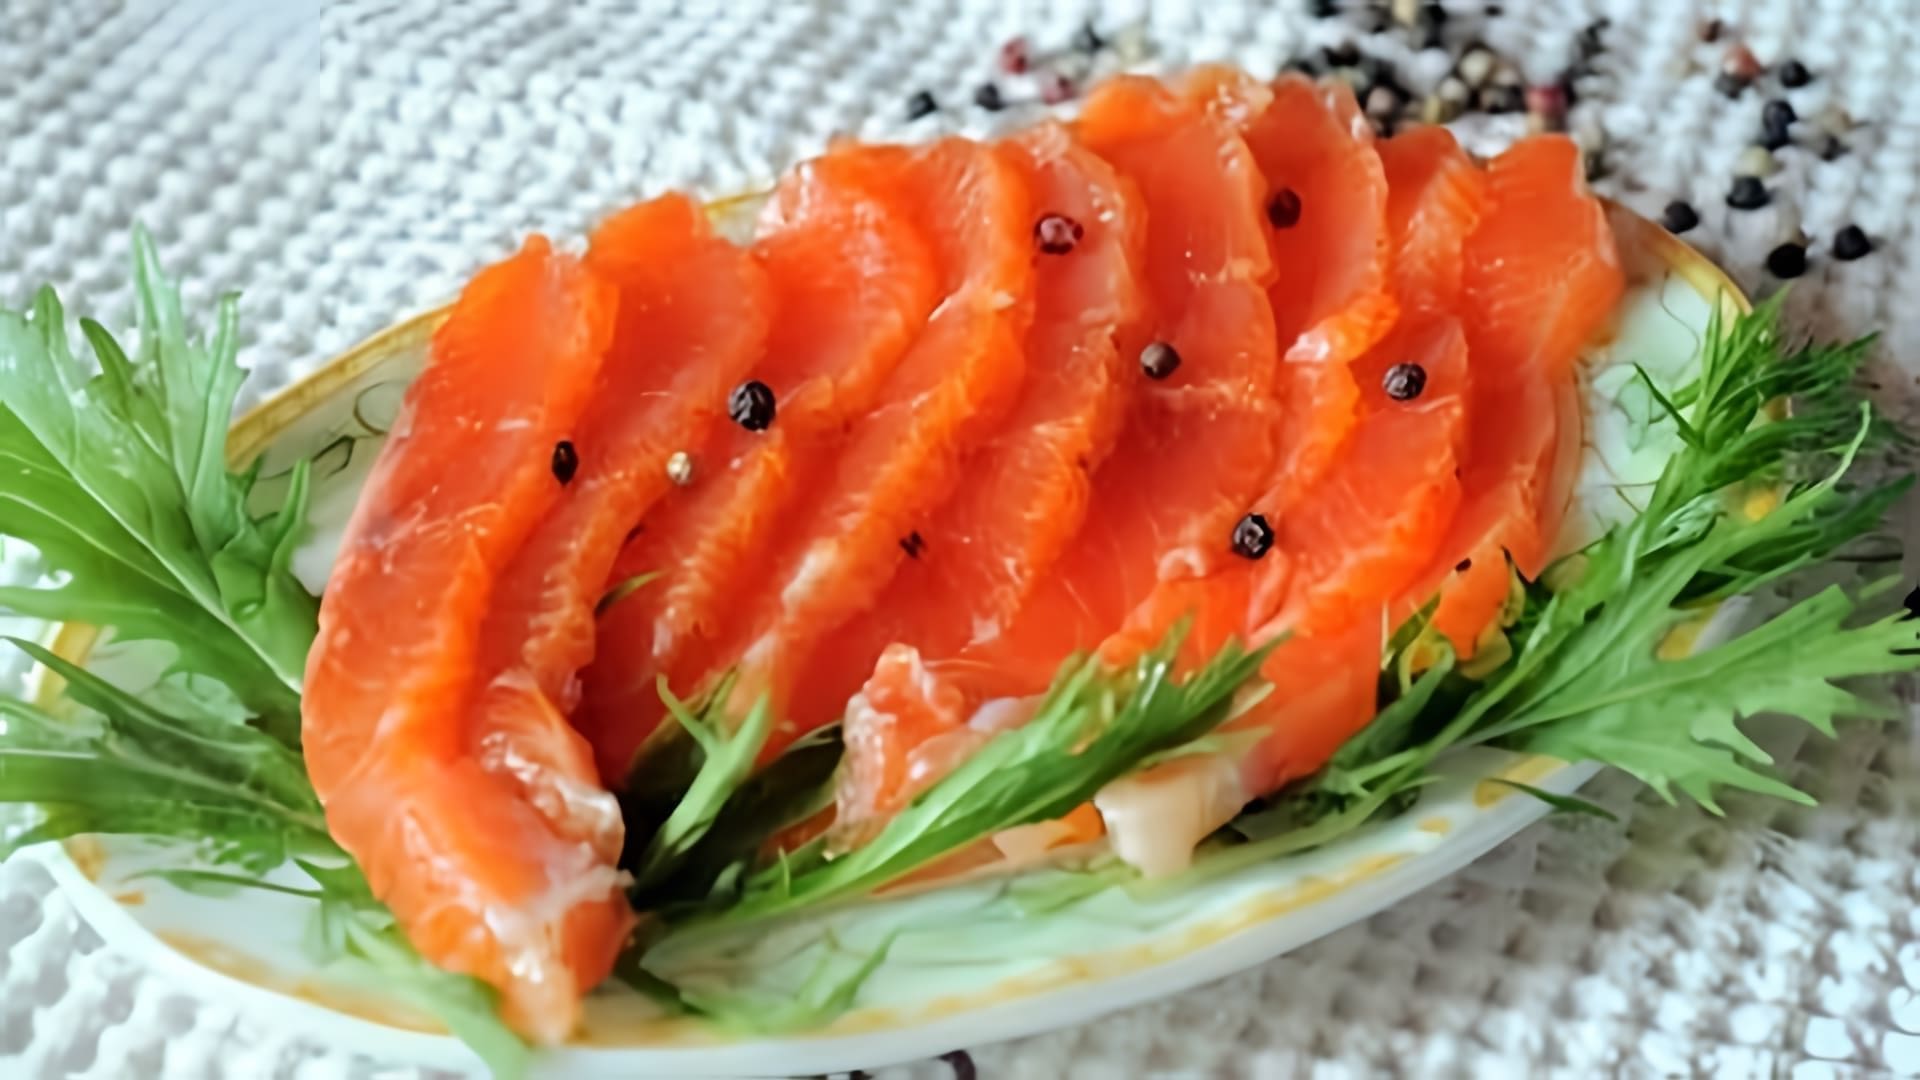 Видео рецепт посолки розового лосося, чтобы он приобрел вкус, похожий на посоленный лосось